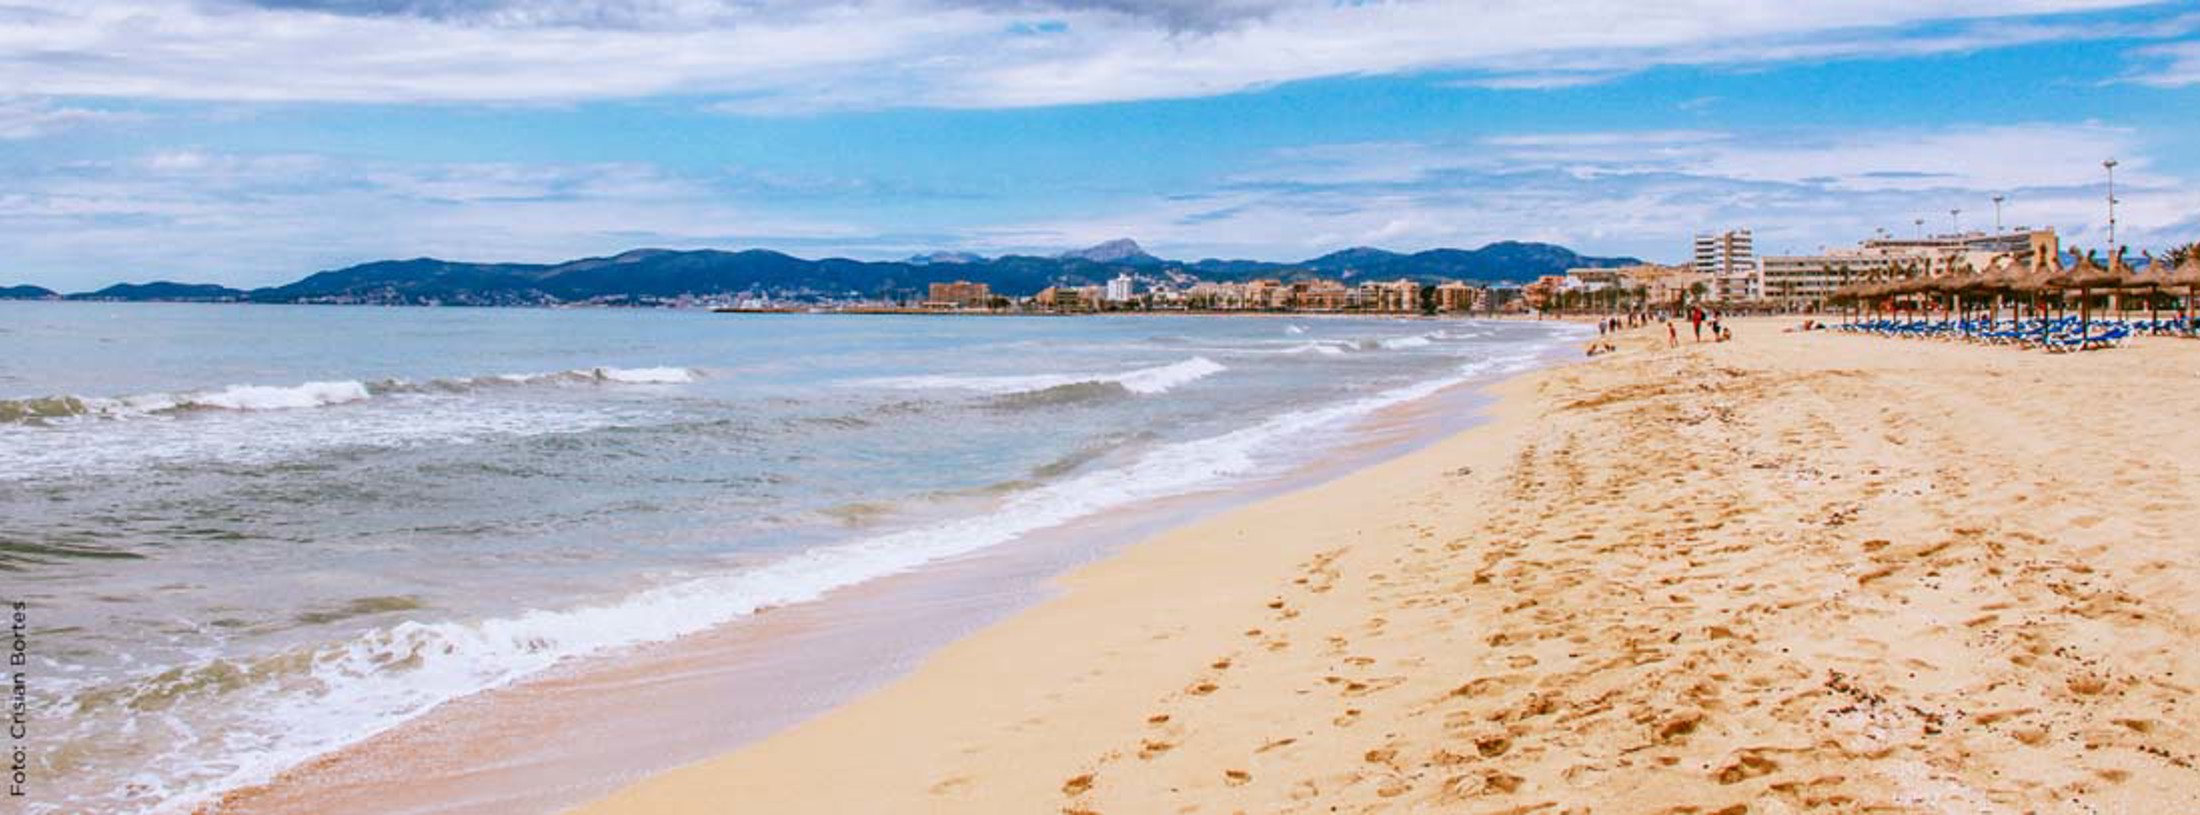 Playa de Palma - Arenal - Can Pastilla